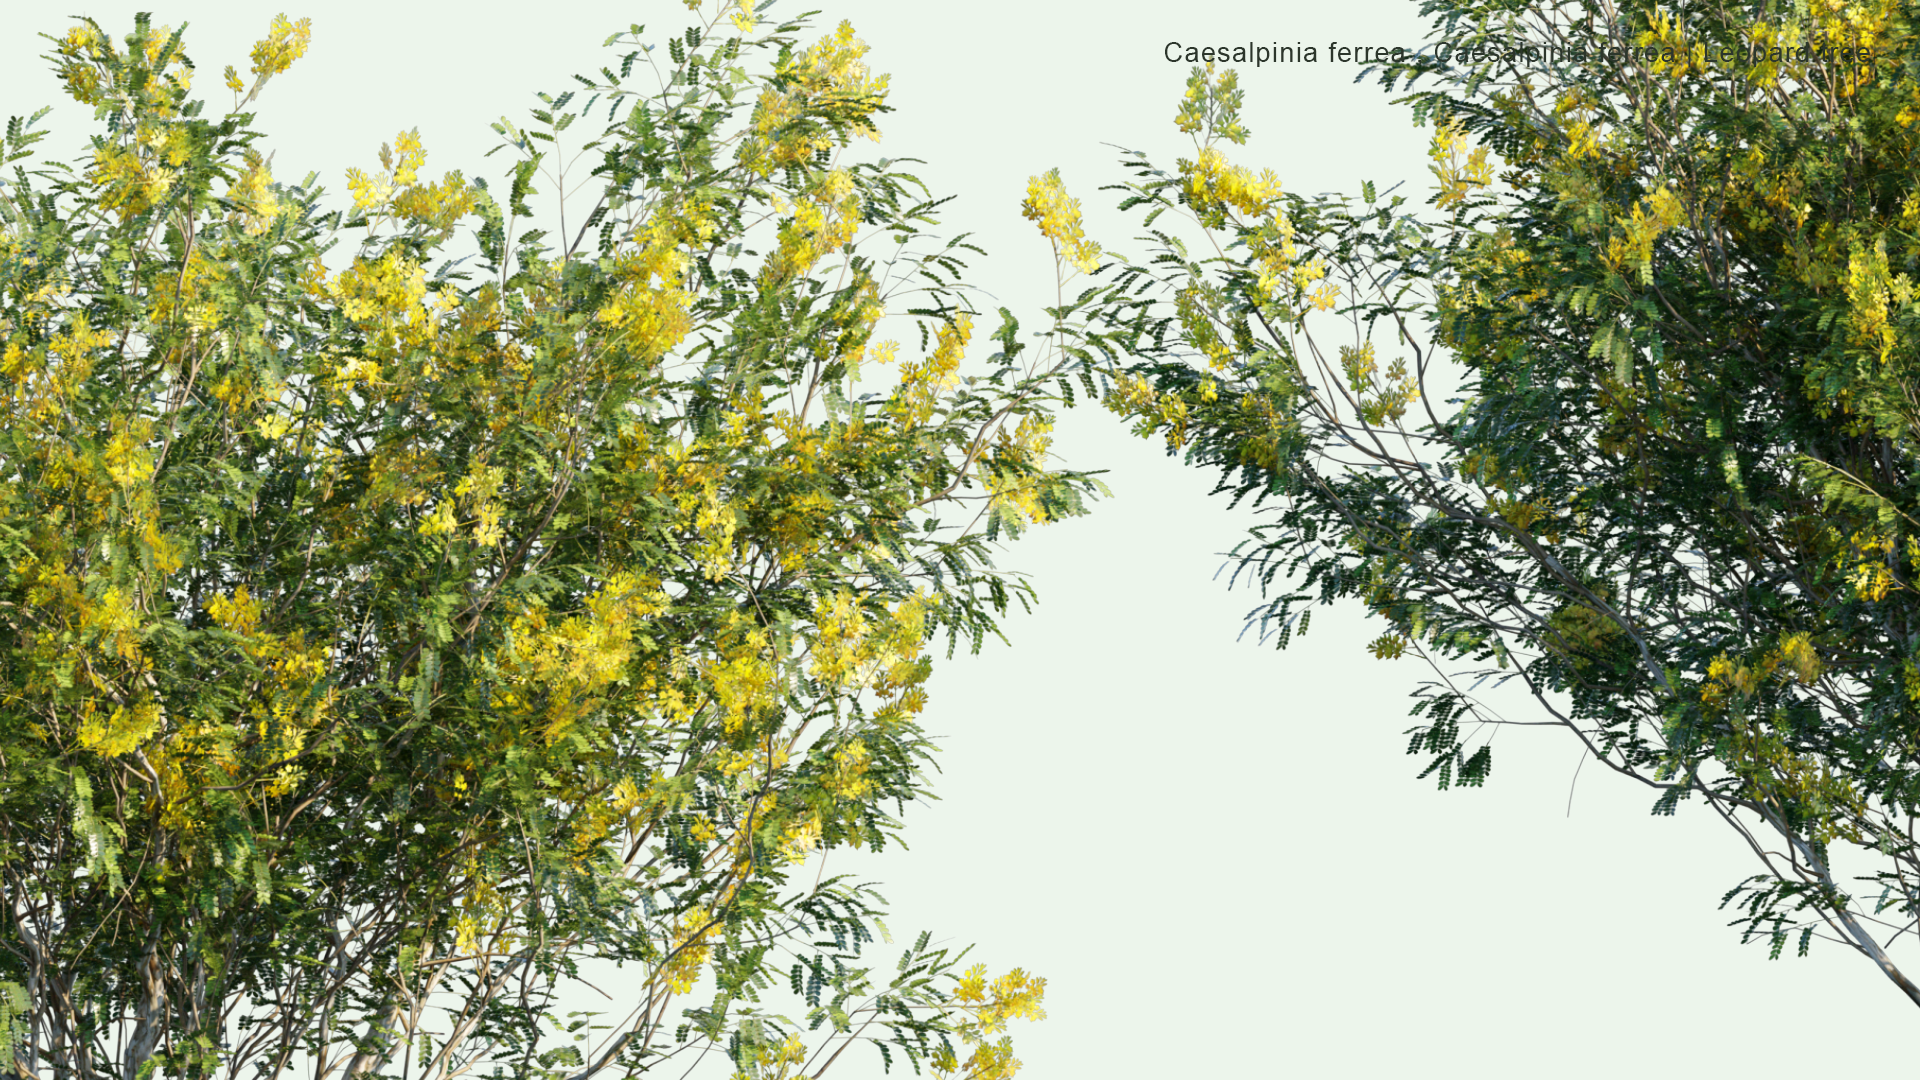 2D Caesalpinia Ferrea, Libidibia Ferrea - Leopard Tree, Morado, Brazilian Ironwood, Pau Ferro